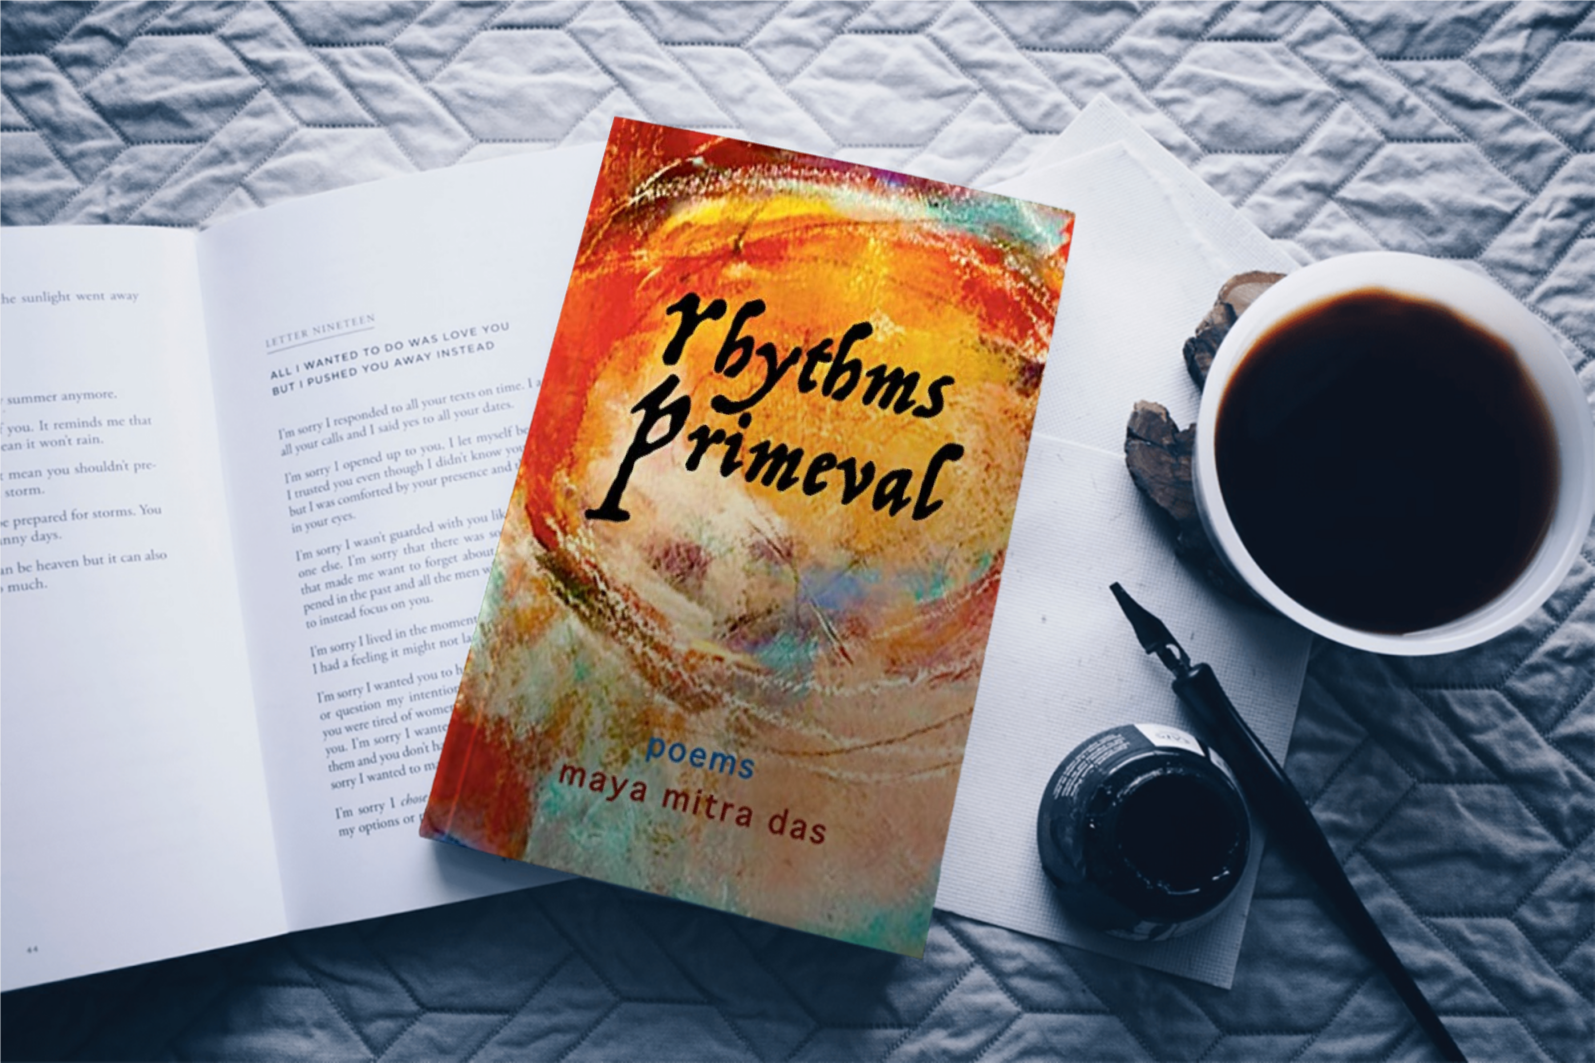 Art for Rhythms Primeval by Dr. Maya Mitra Das 